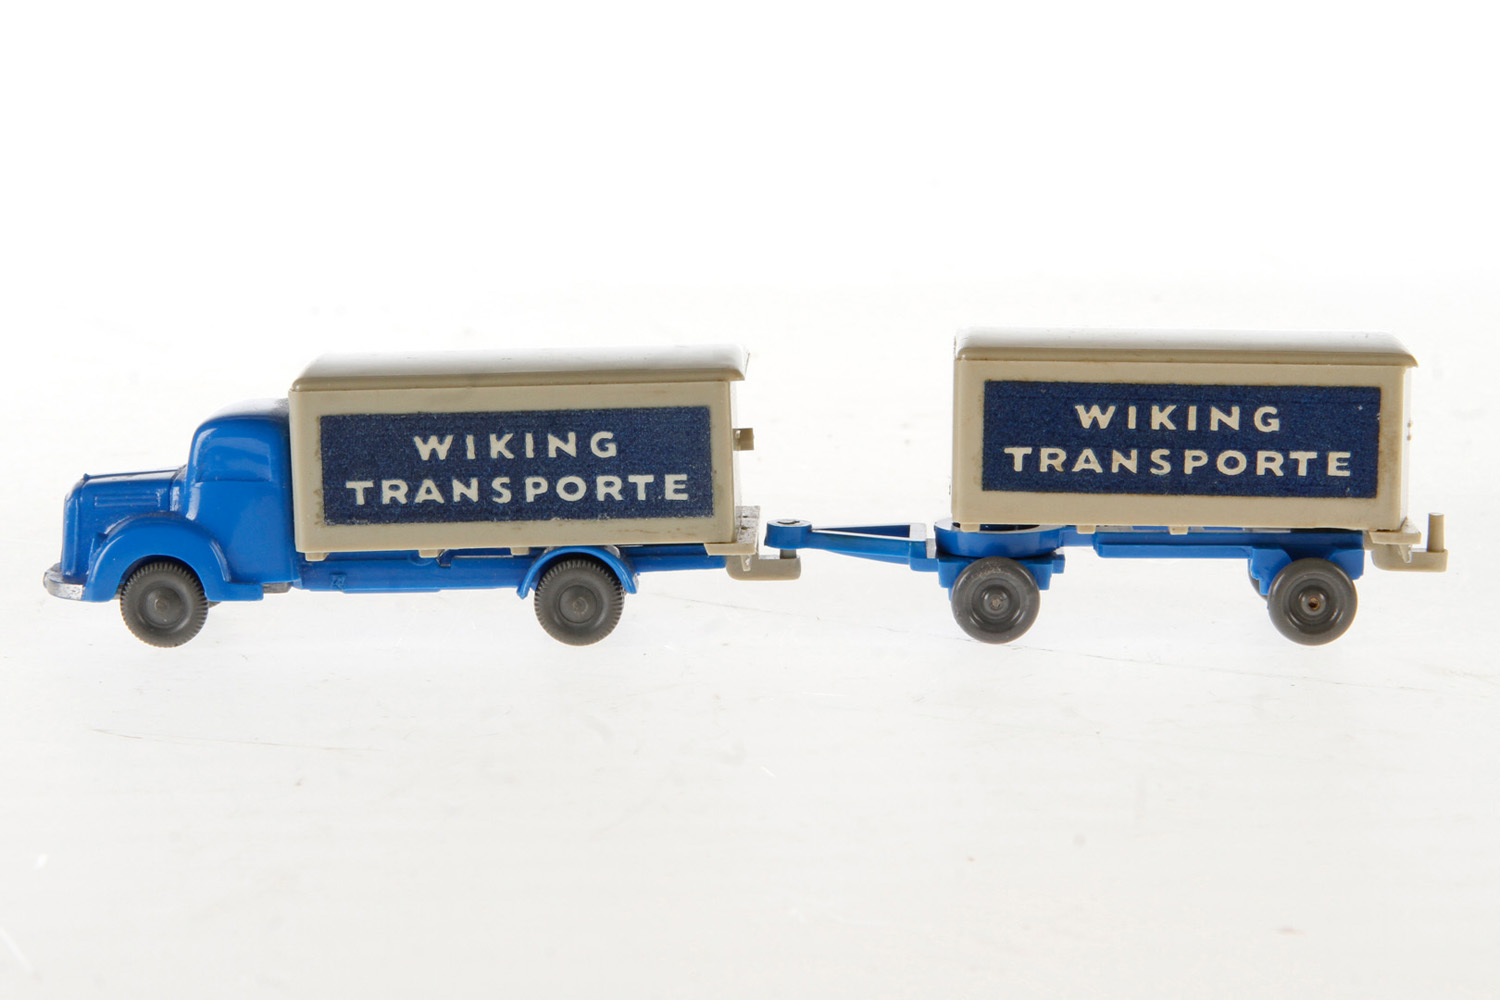 Wiking Sattelzug "Wiking Transporte" mit Anhänger, Kunststoff, blau/grau, unverglast, Drahtachsen,